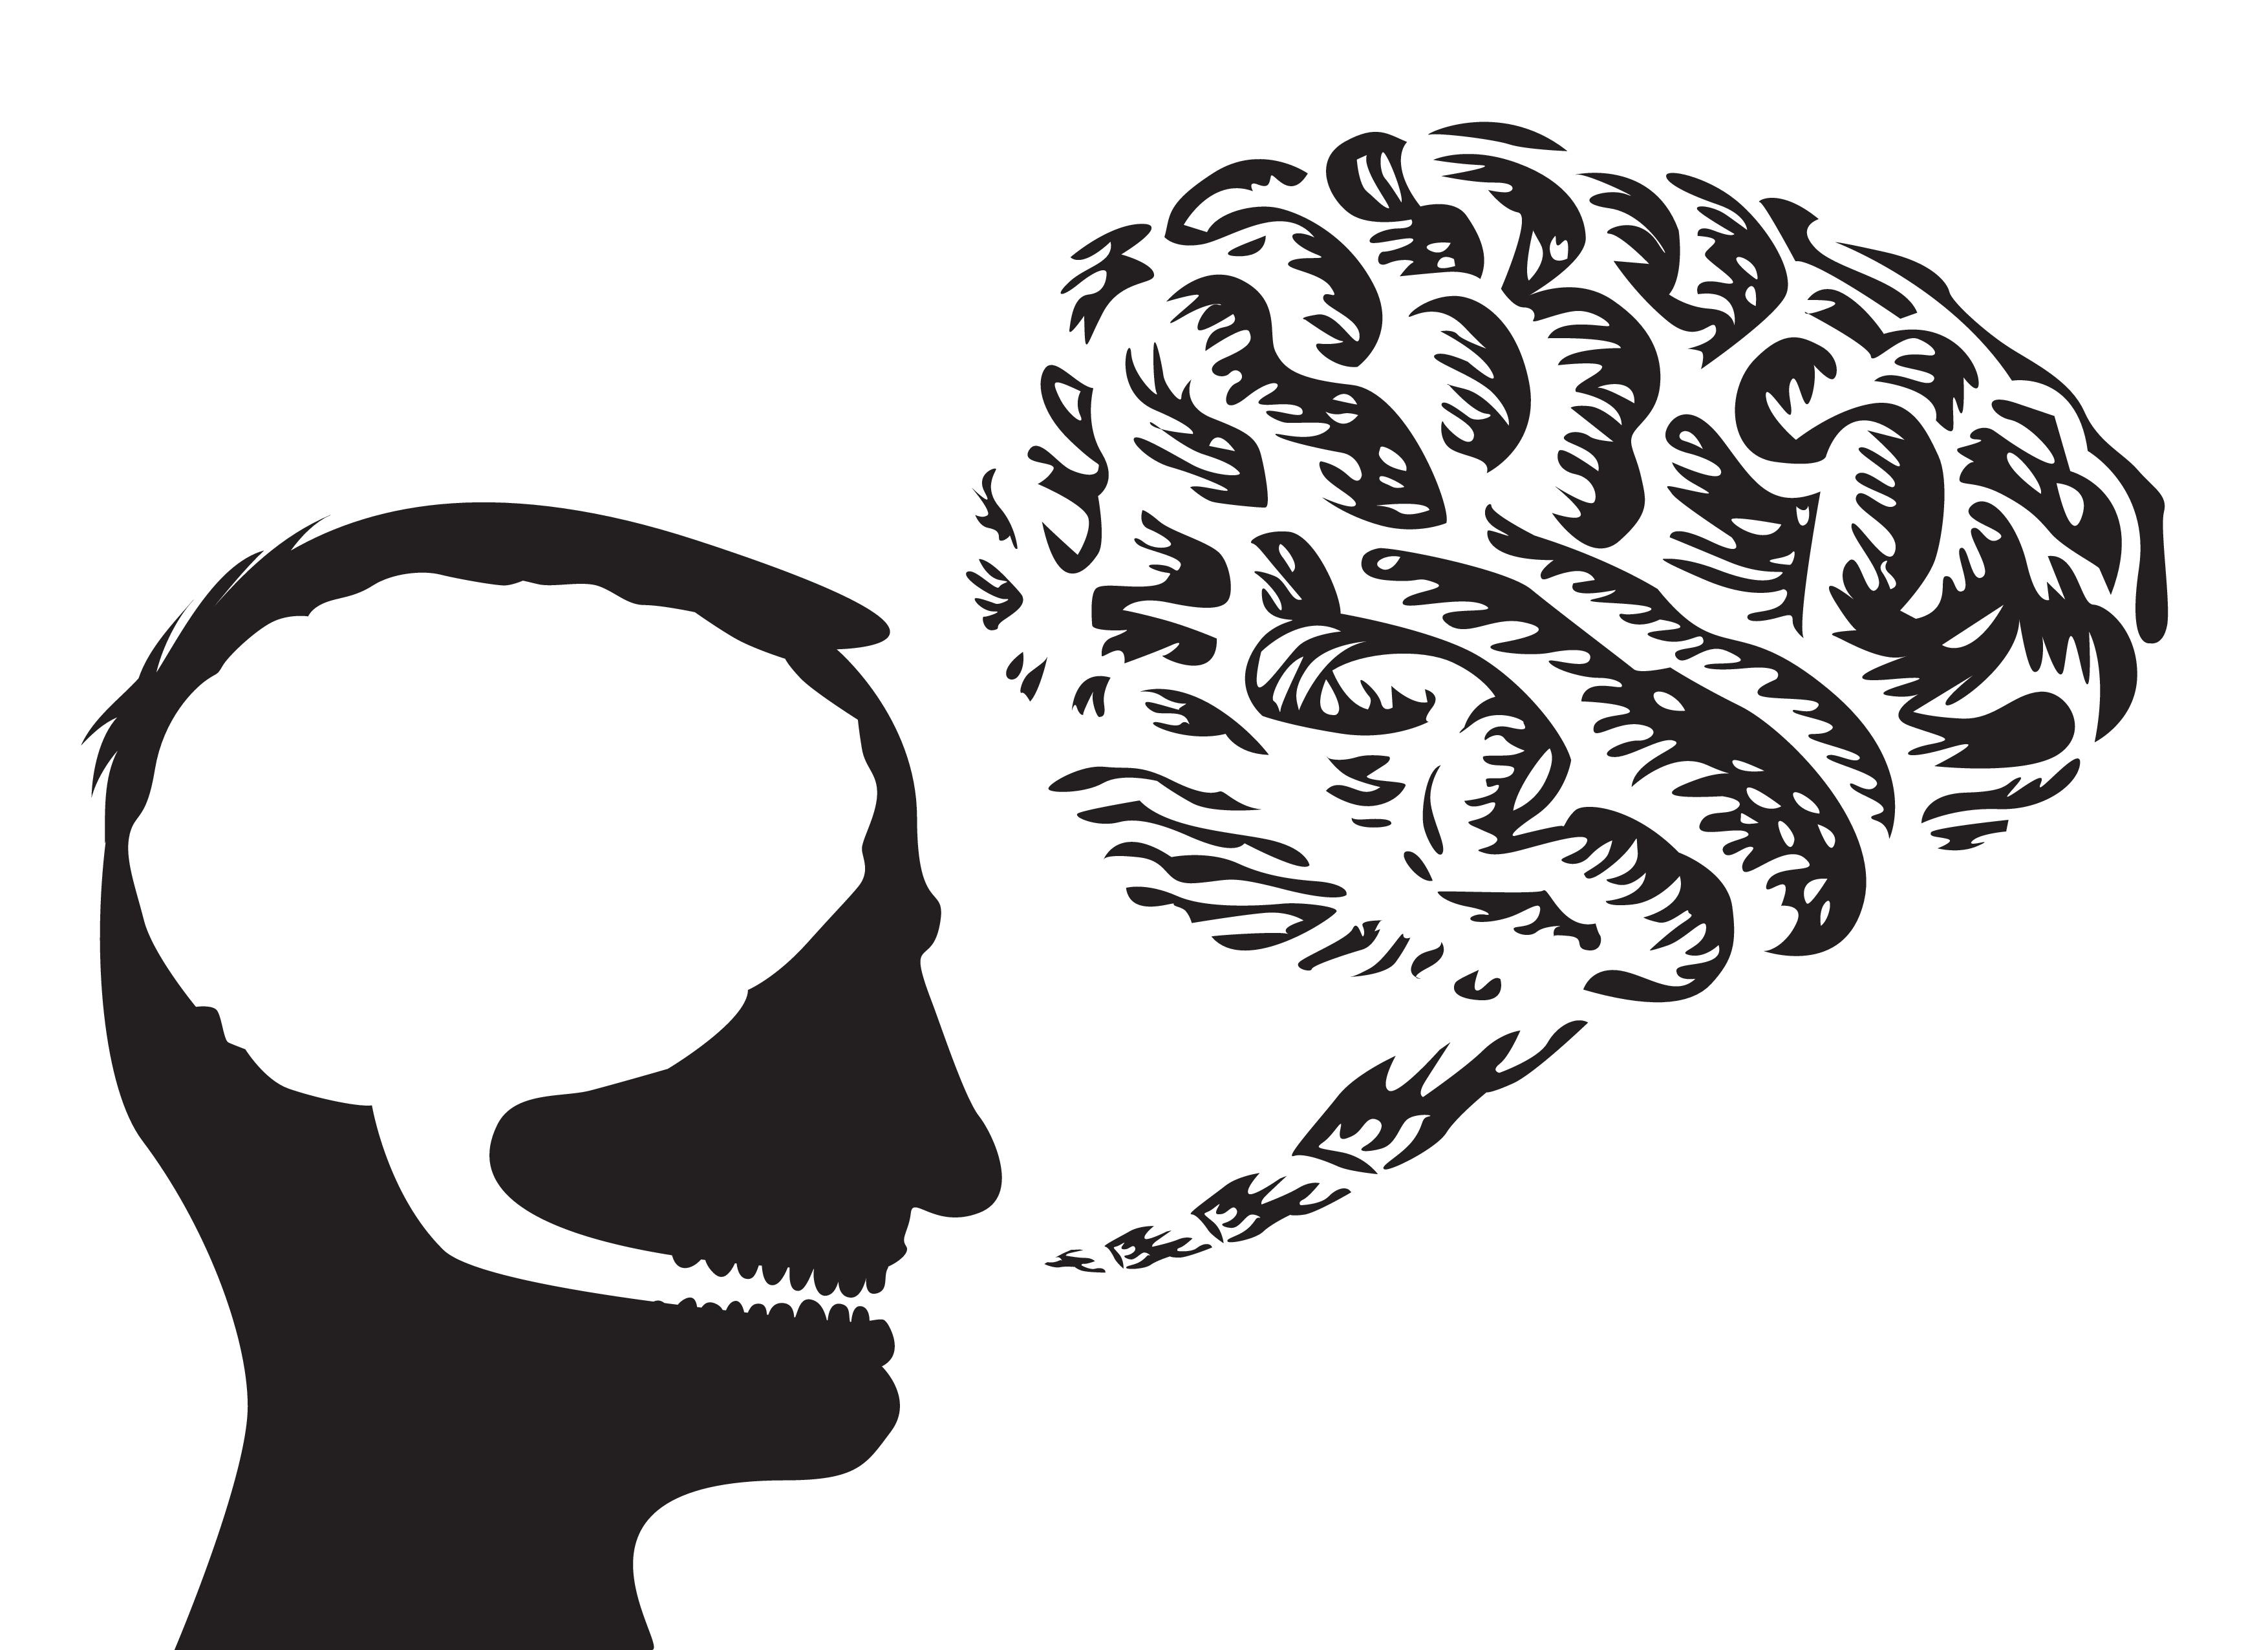 Speech brain. Человек с мозгом в голове вектор. Голова с мозгом чб. Сцена люди головы Графика.